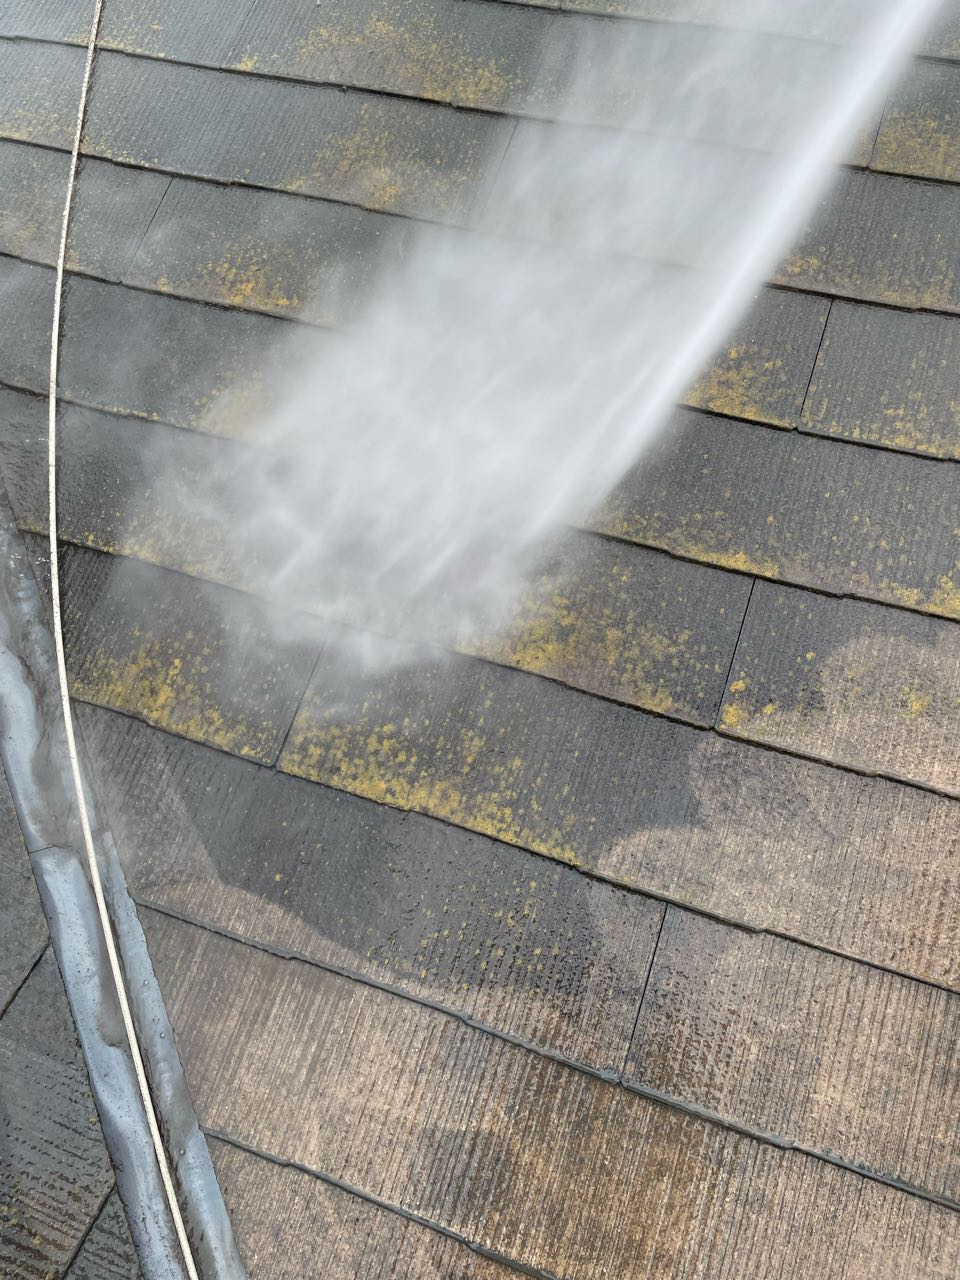 屋根は洗浄能力の高いトルネードノズルを付けて洗います。